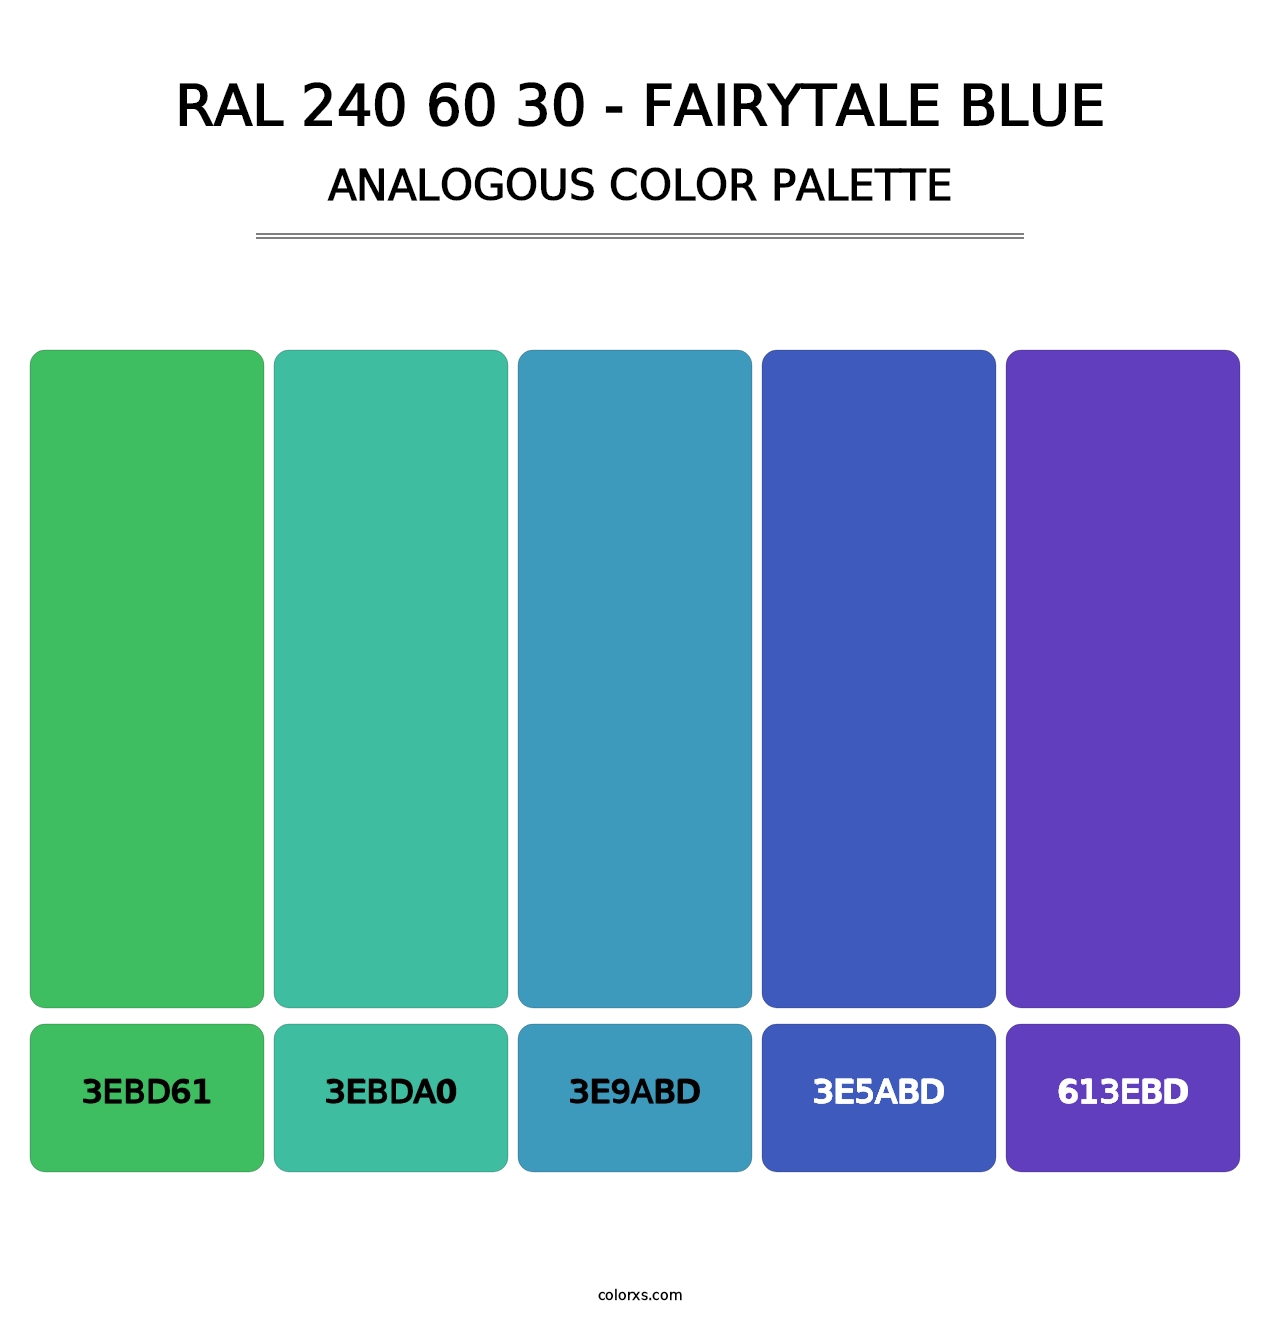 RAL 240 60 30 - Fairytale Blue - Analogous Color Palette